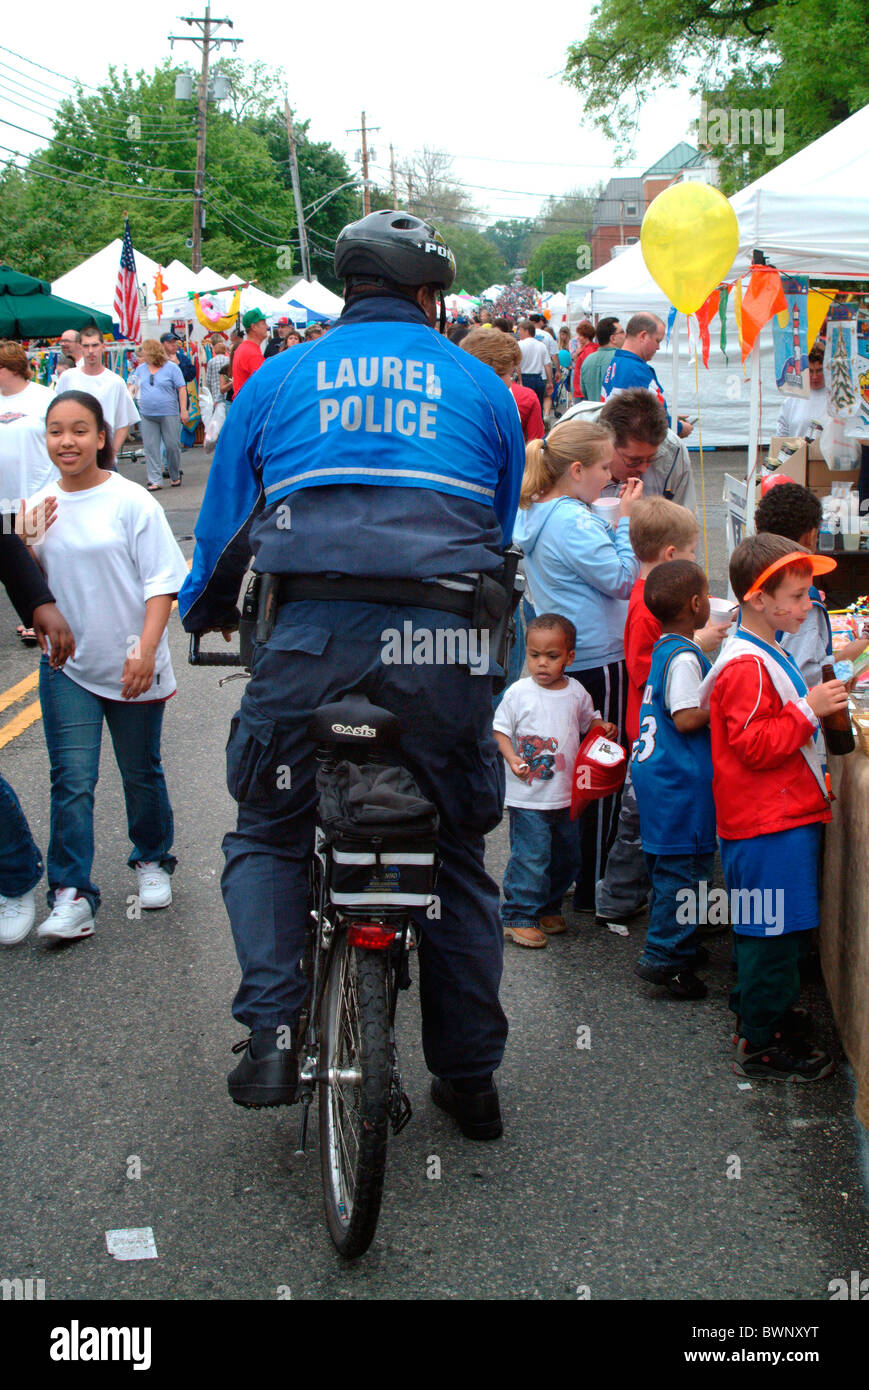 La policía patrulla en bicicleta en Laurel, Maryland Foto de stock